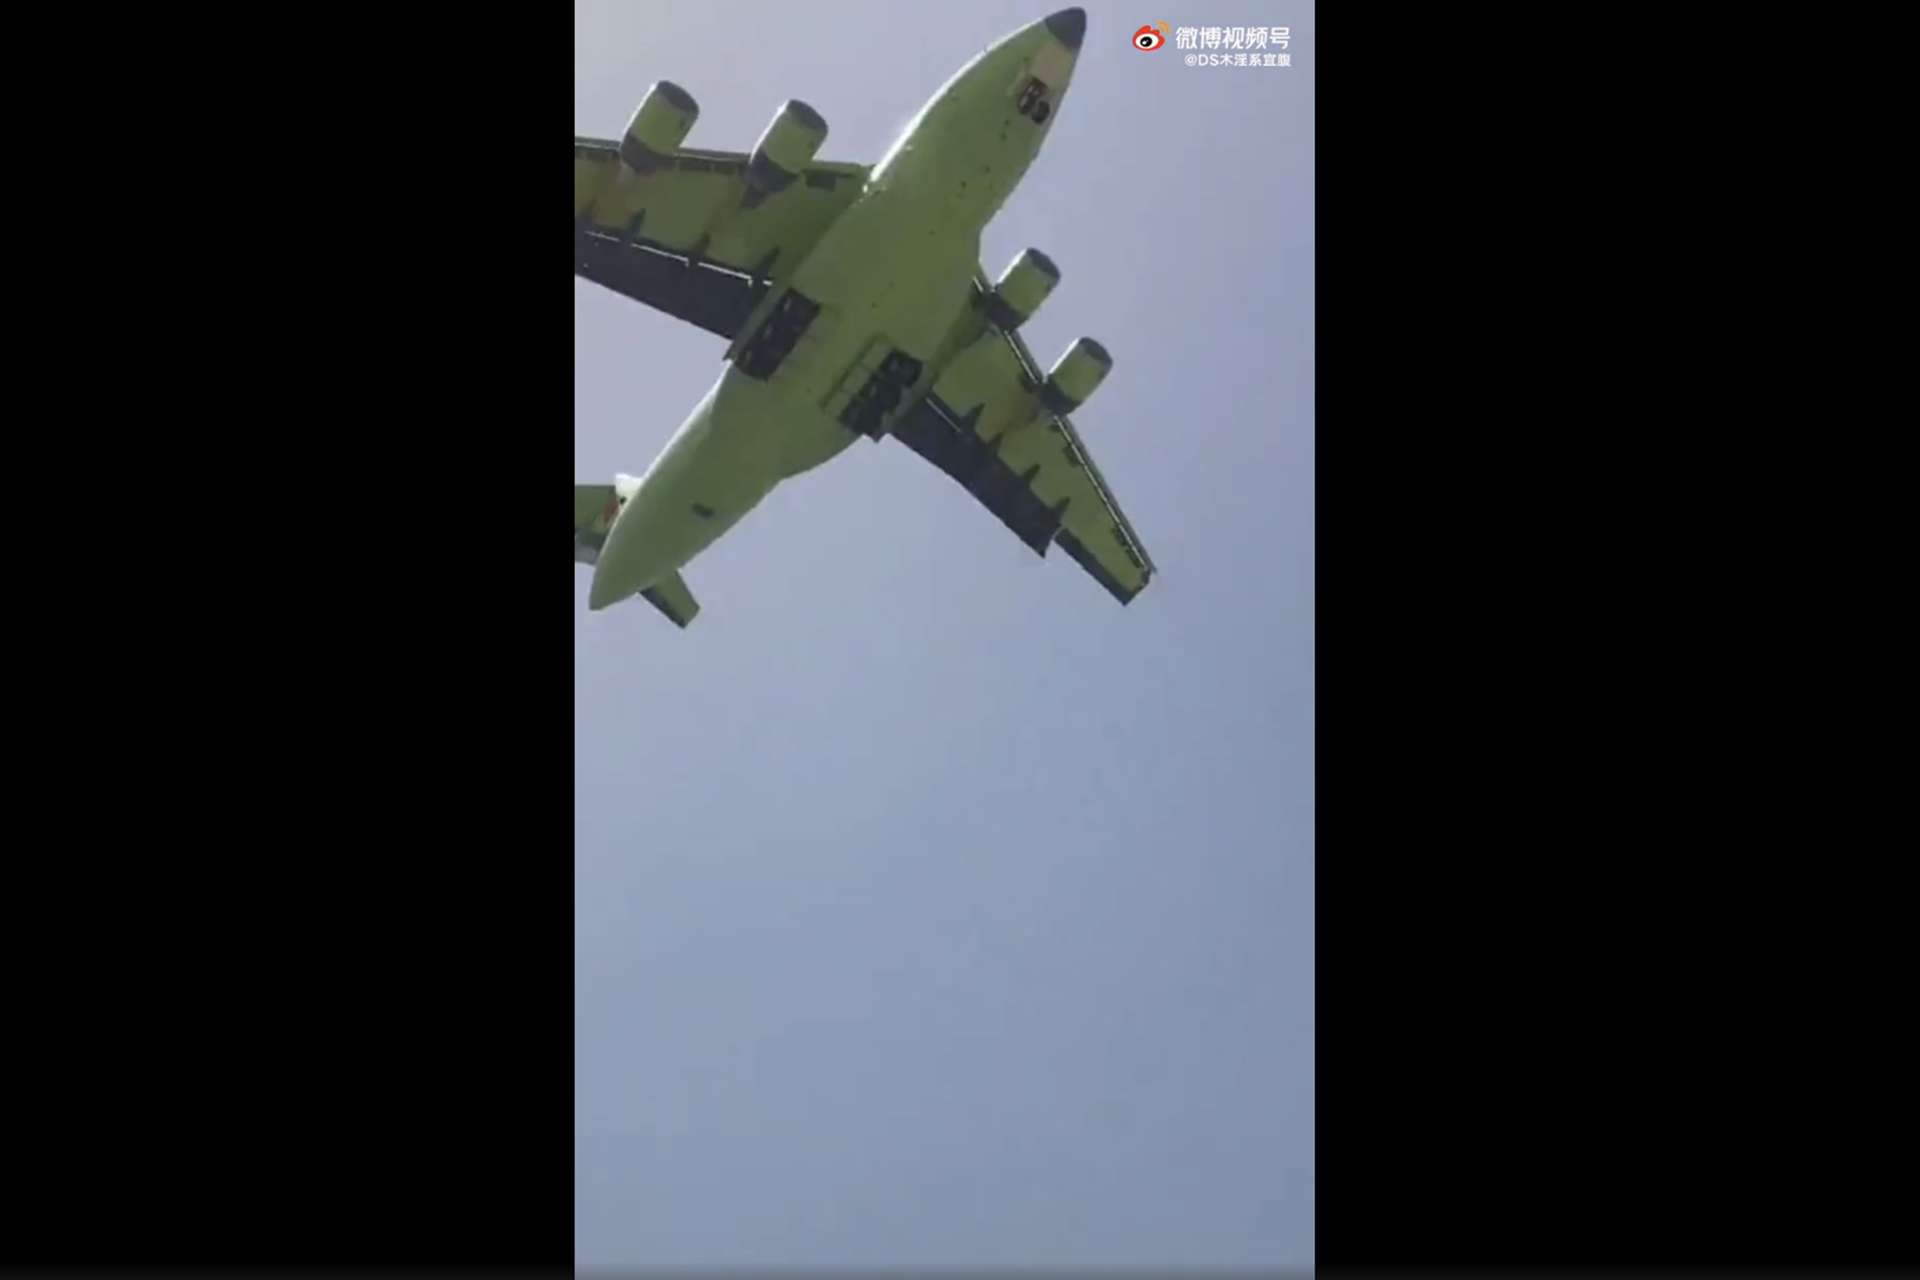 中国运-20安装涡扇-20发动机试飞。这是试飞视频中，安装涡扇-20发动机的运-20底部。（微博@燃烧的哈尔科夫）